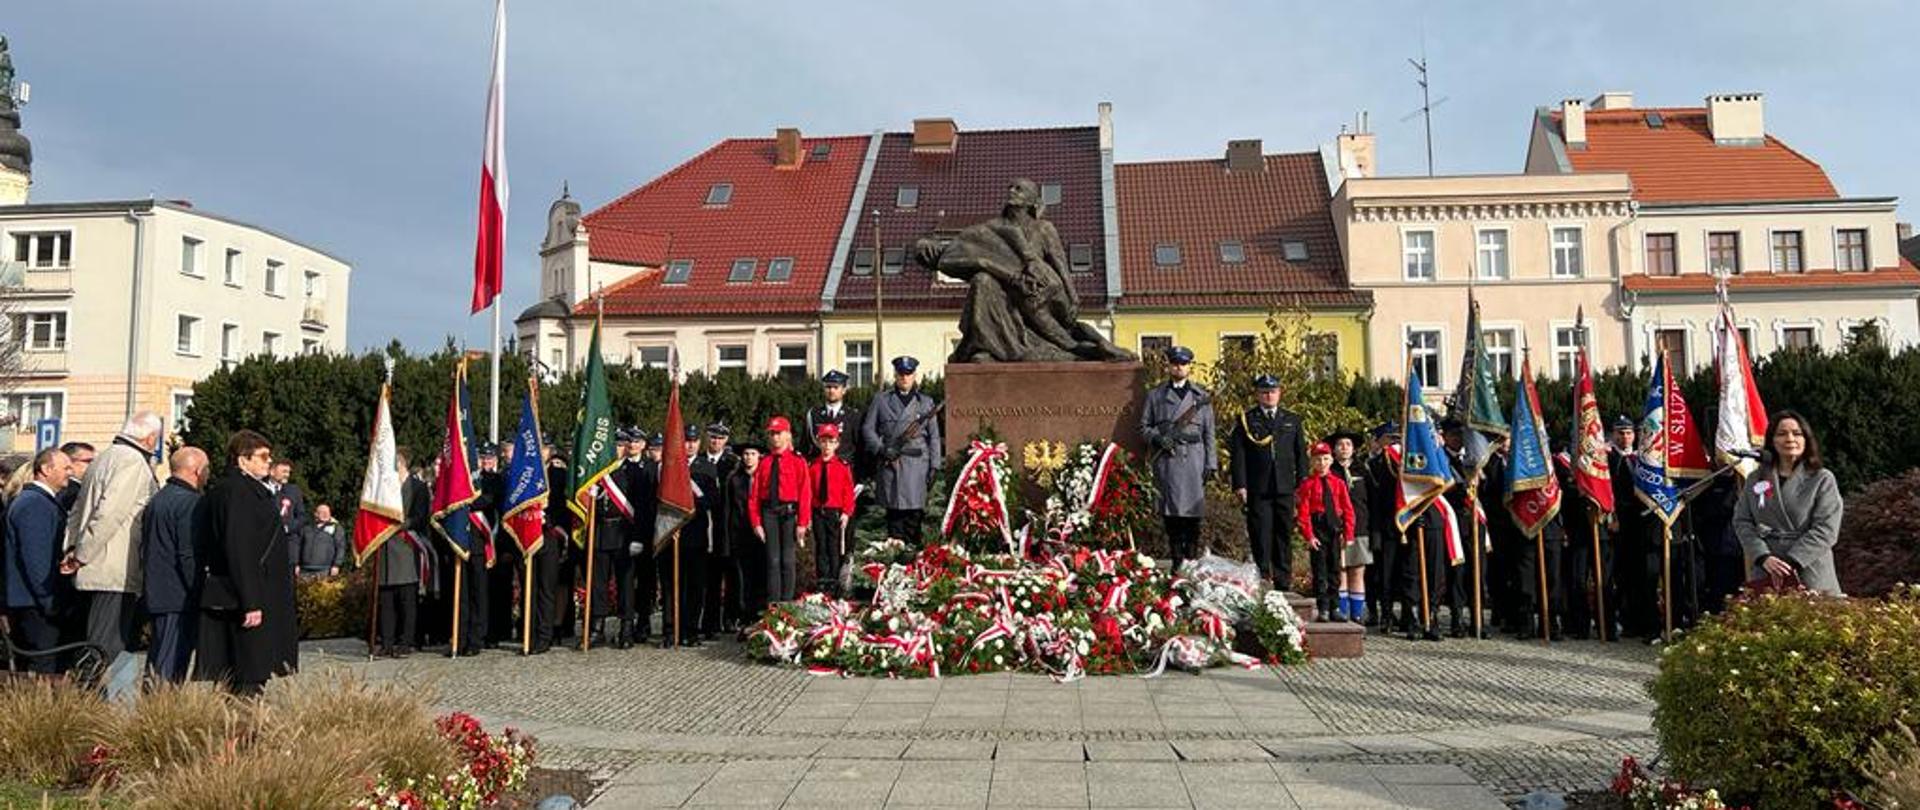 Na zdjęciu znajdują się osoby ubrane w mundury, poczty flagowe ustawione przy pomniku, w tle widać budynki